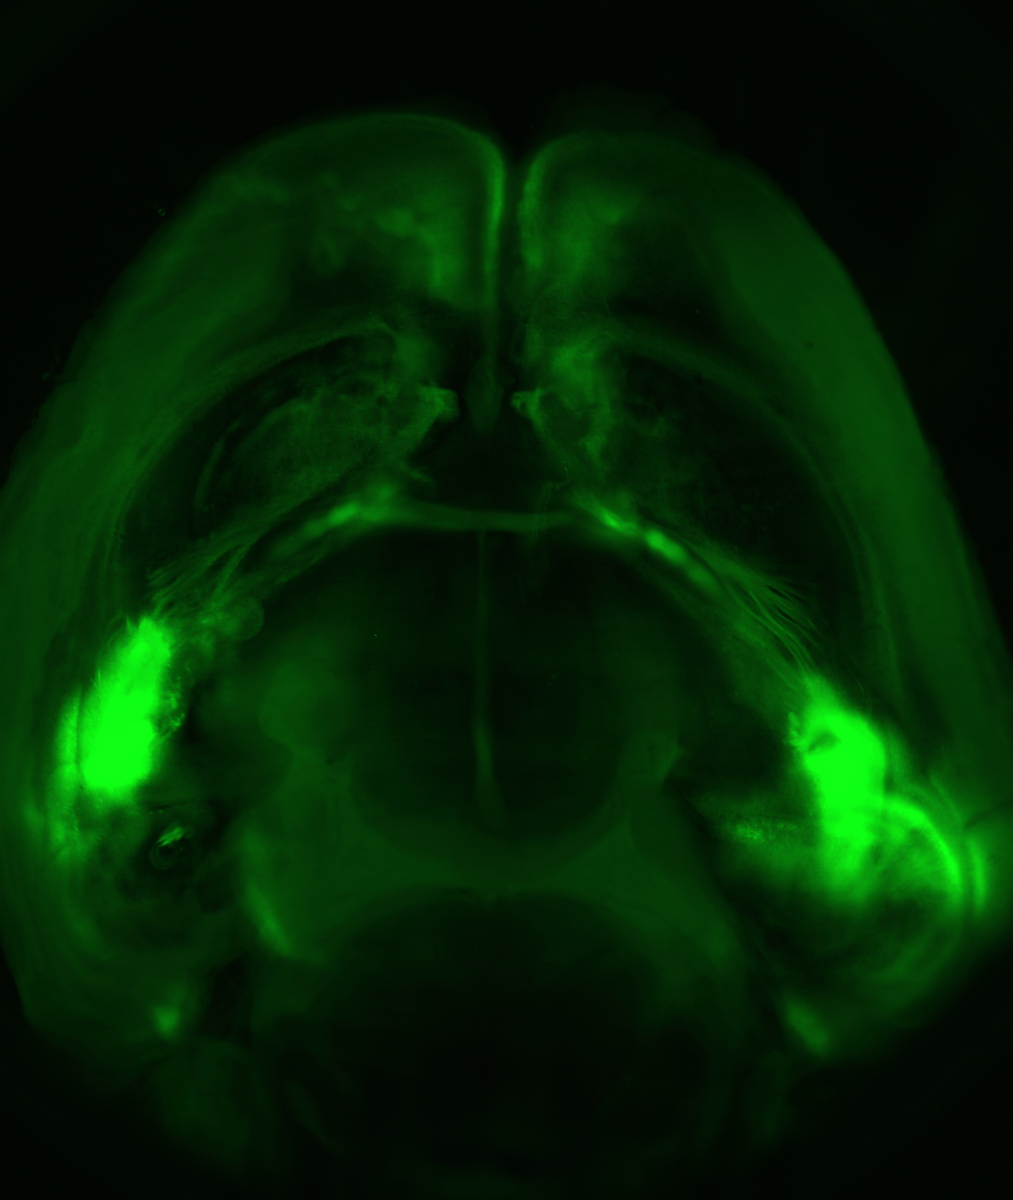 מוח עכבר במבט מלמעלה: שלוחות עצביות מחברות בין שתי האמיגדלות (שני האזורים הבוהקים ביותר, משני צידי המוח) לבין קליפת המוח (החלק העליון)